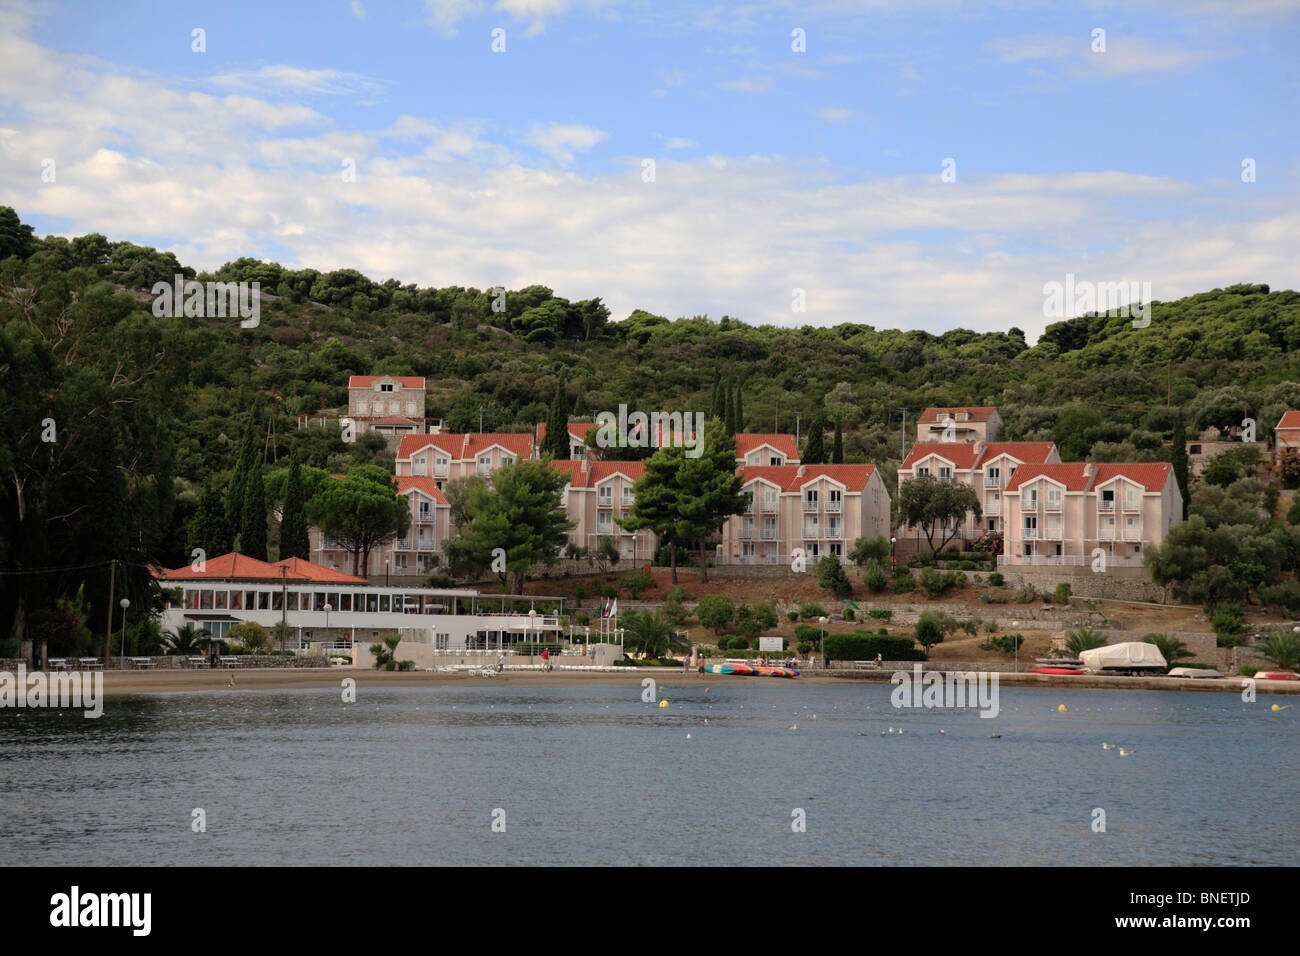 Hotel Villas Kolocep Donje Celo harbour, Kolocep, Dalmatie du Sud Croatie une des îles Élaphites près de Dubrovnik Banque D'Images